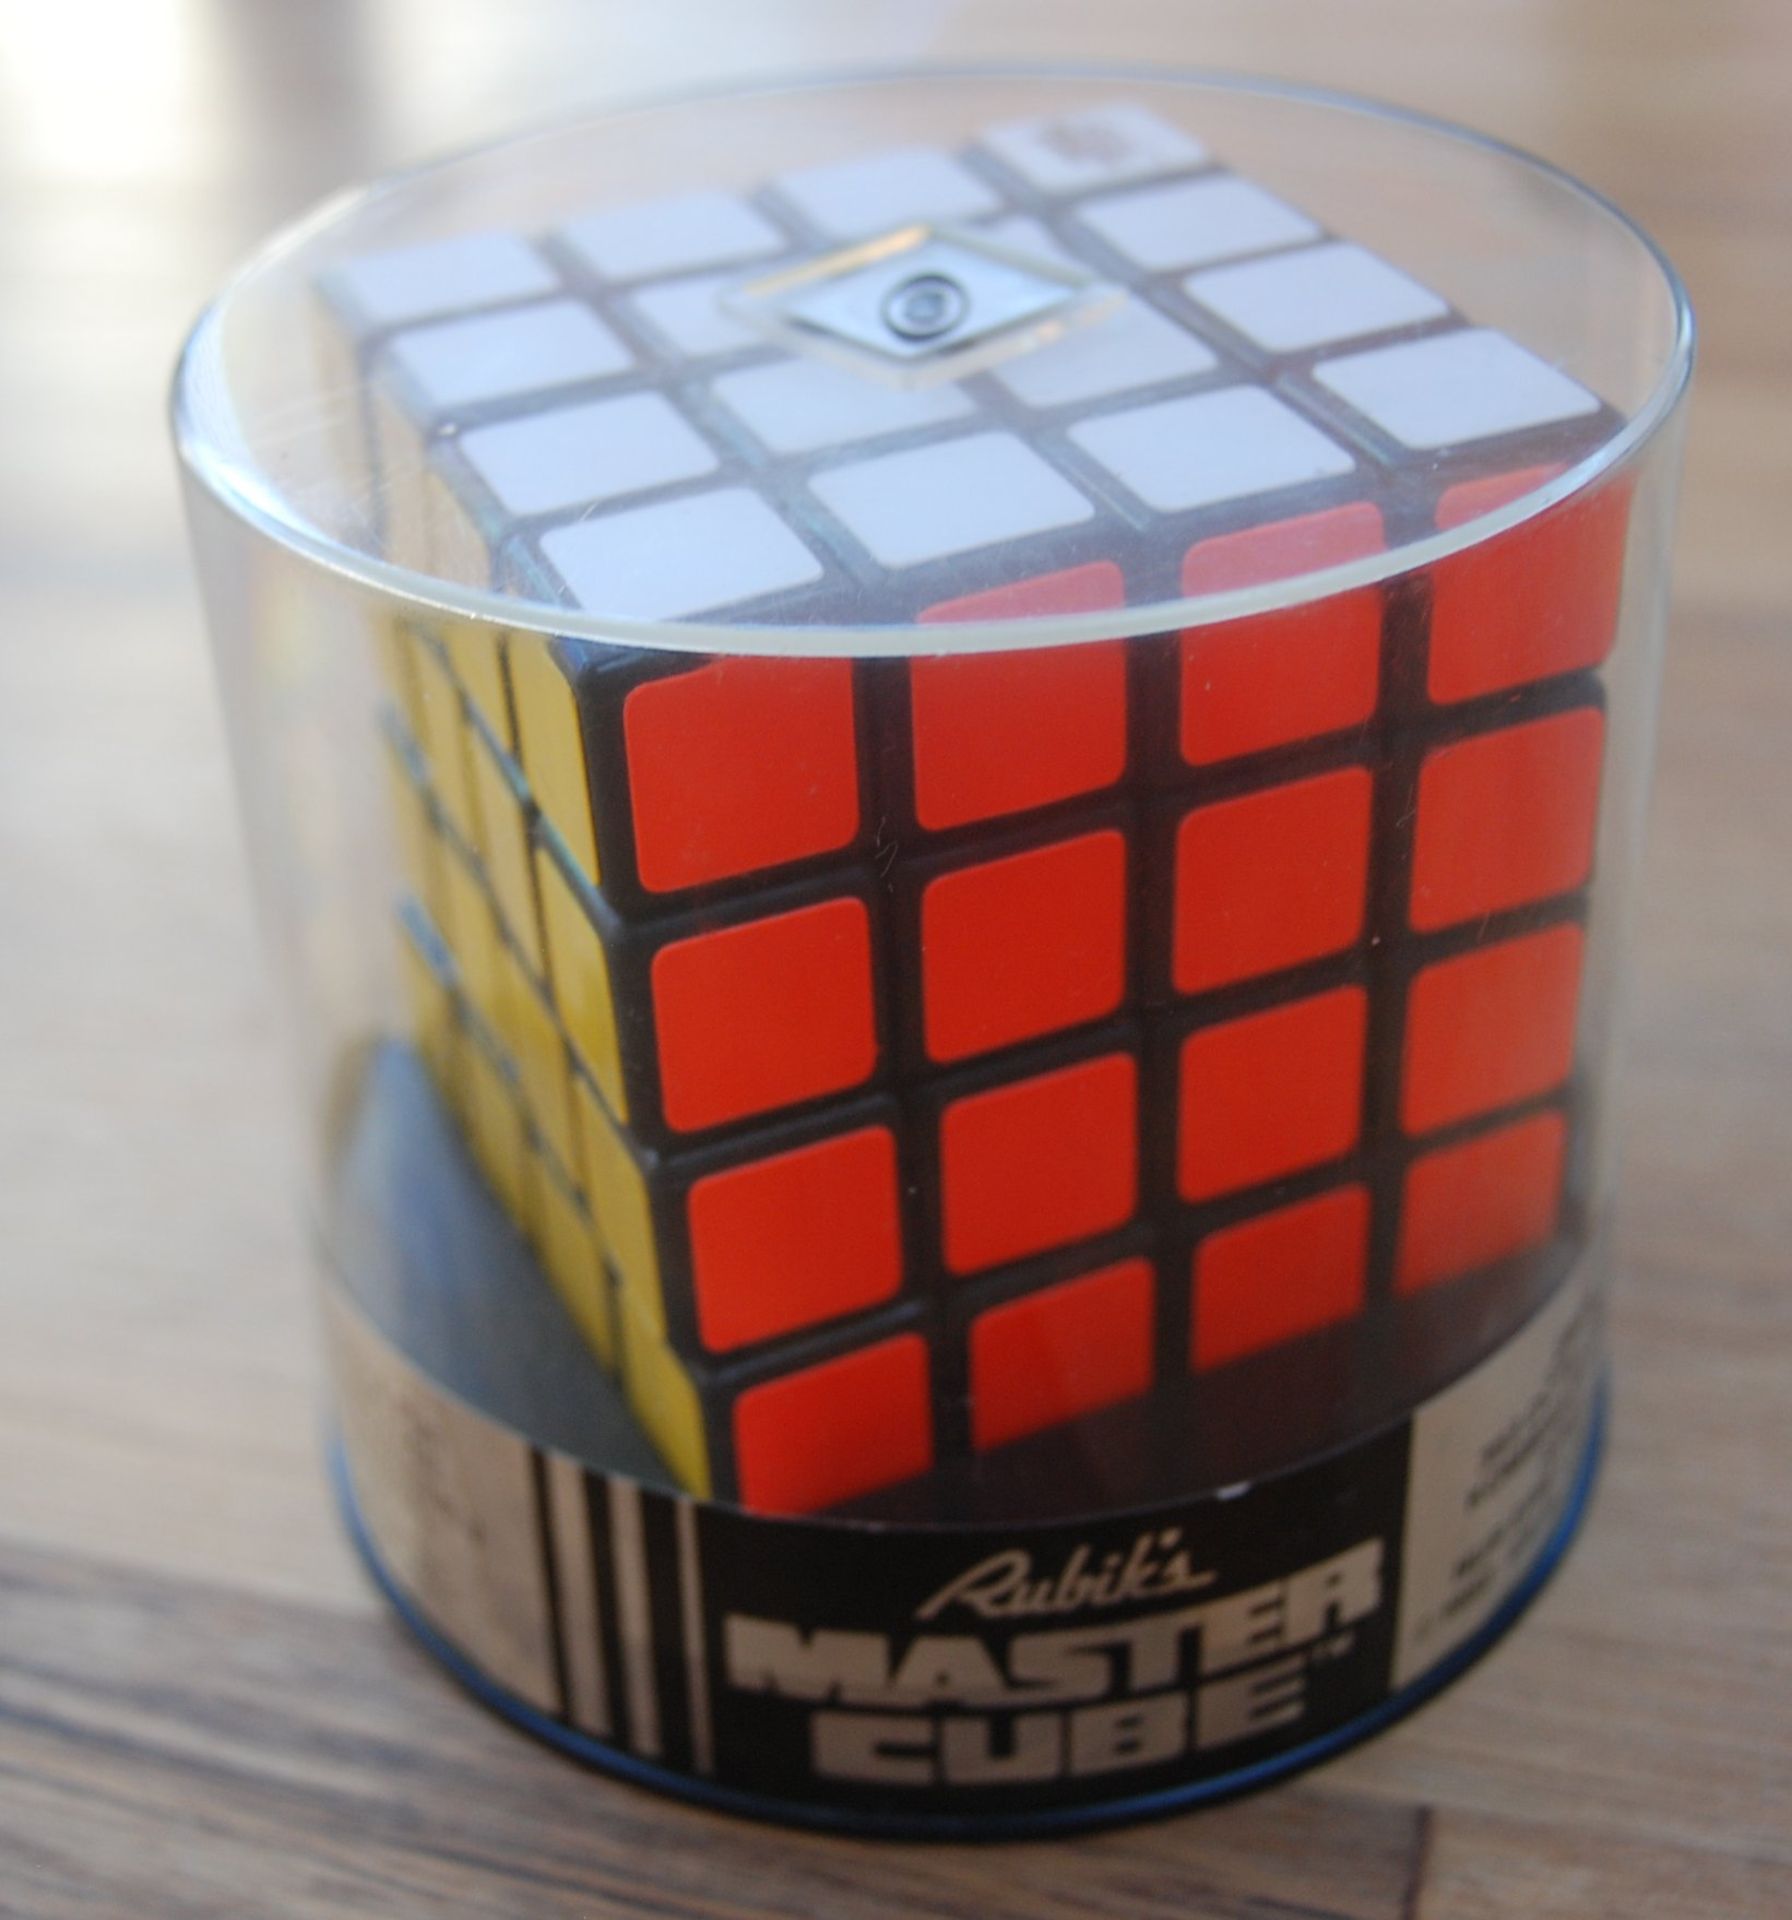 Rubik's Rache, Zauberwürfel 4x4, neu in orig. Verpackung, 198